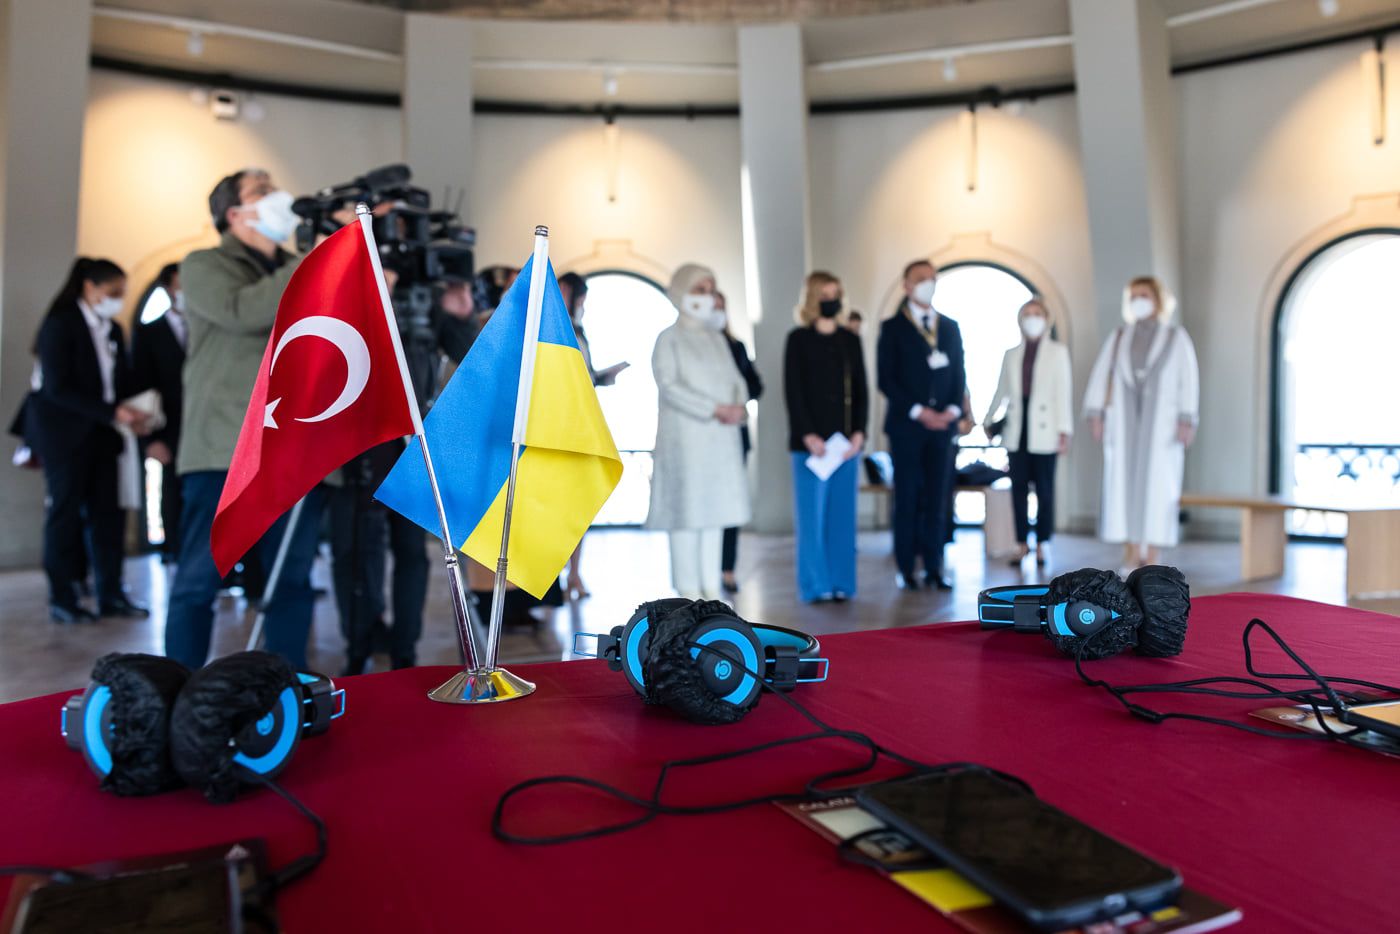 Візит Президента України до Туреччини, на відміну від пляжного відпочинку в Катарі, - вчасний і правильний.